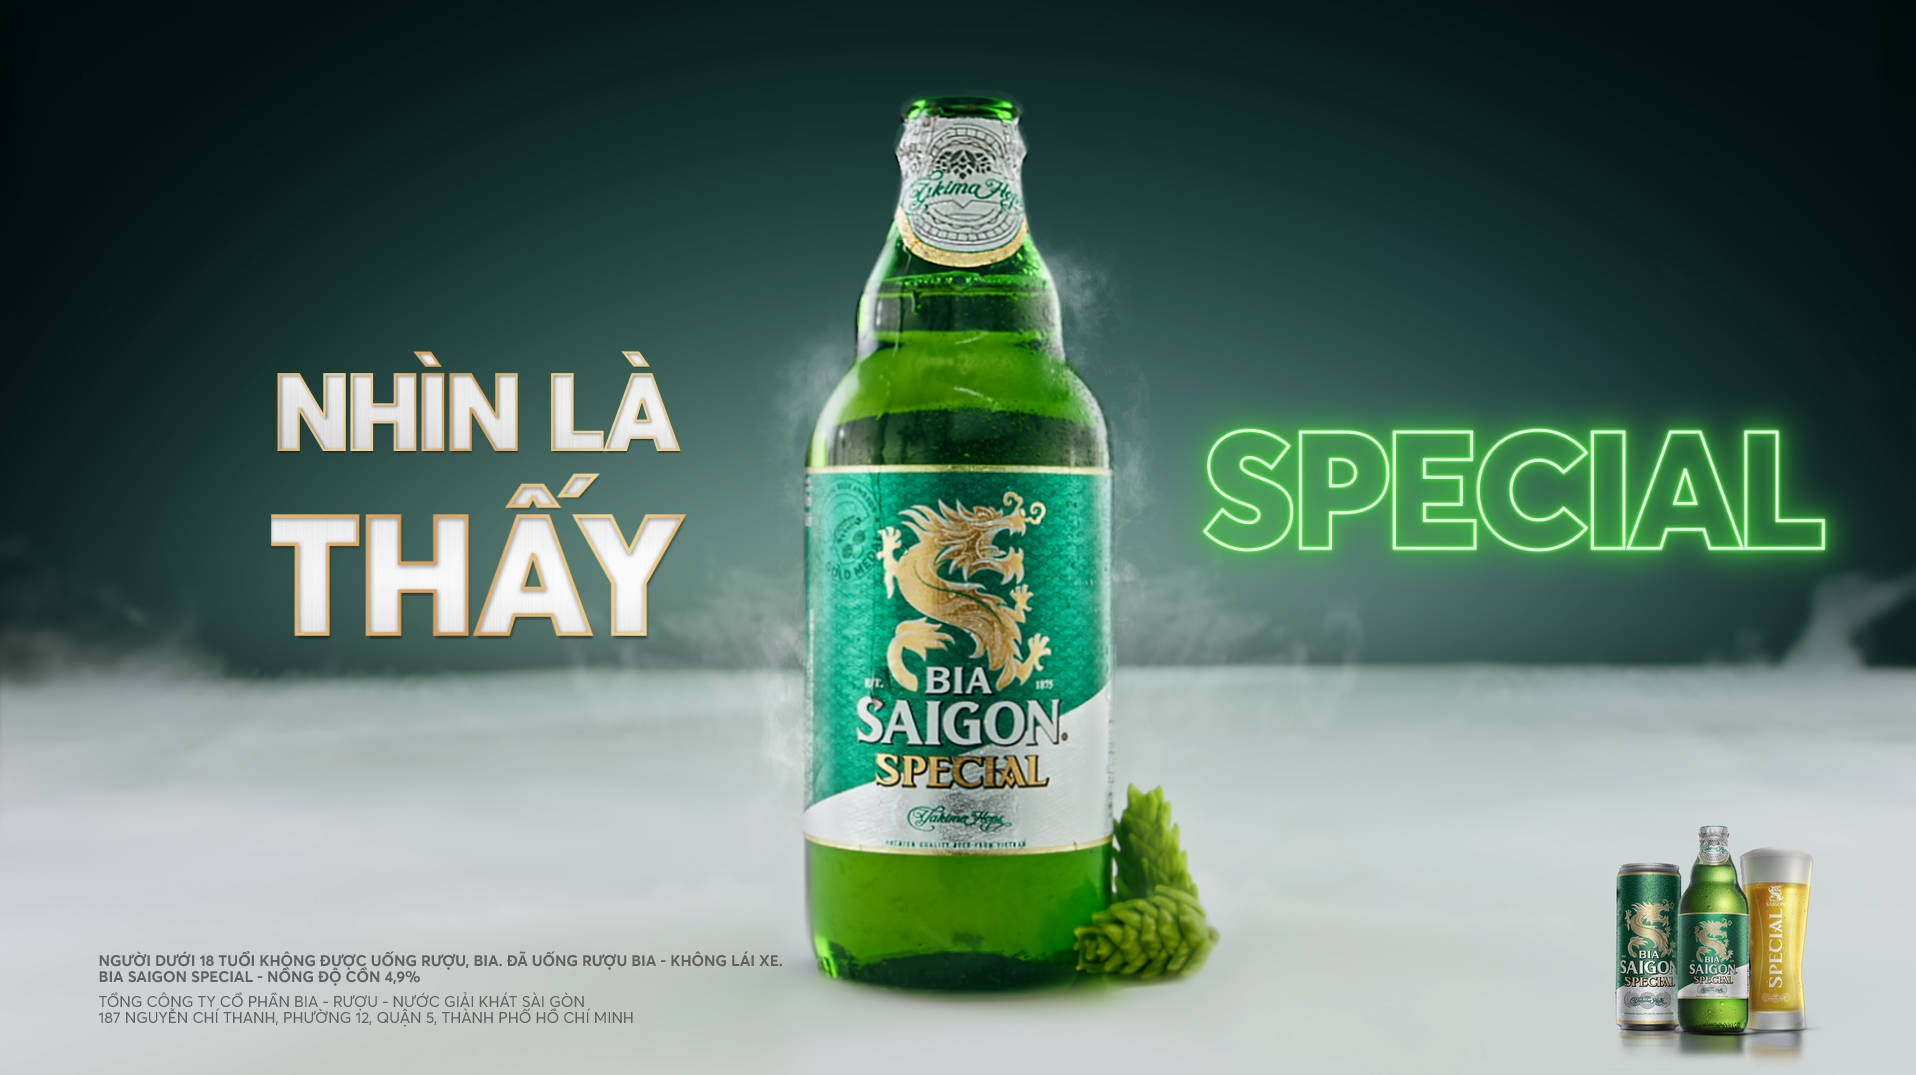 Bia Saigon Special - Truly Special